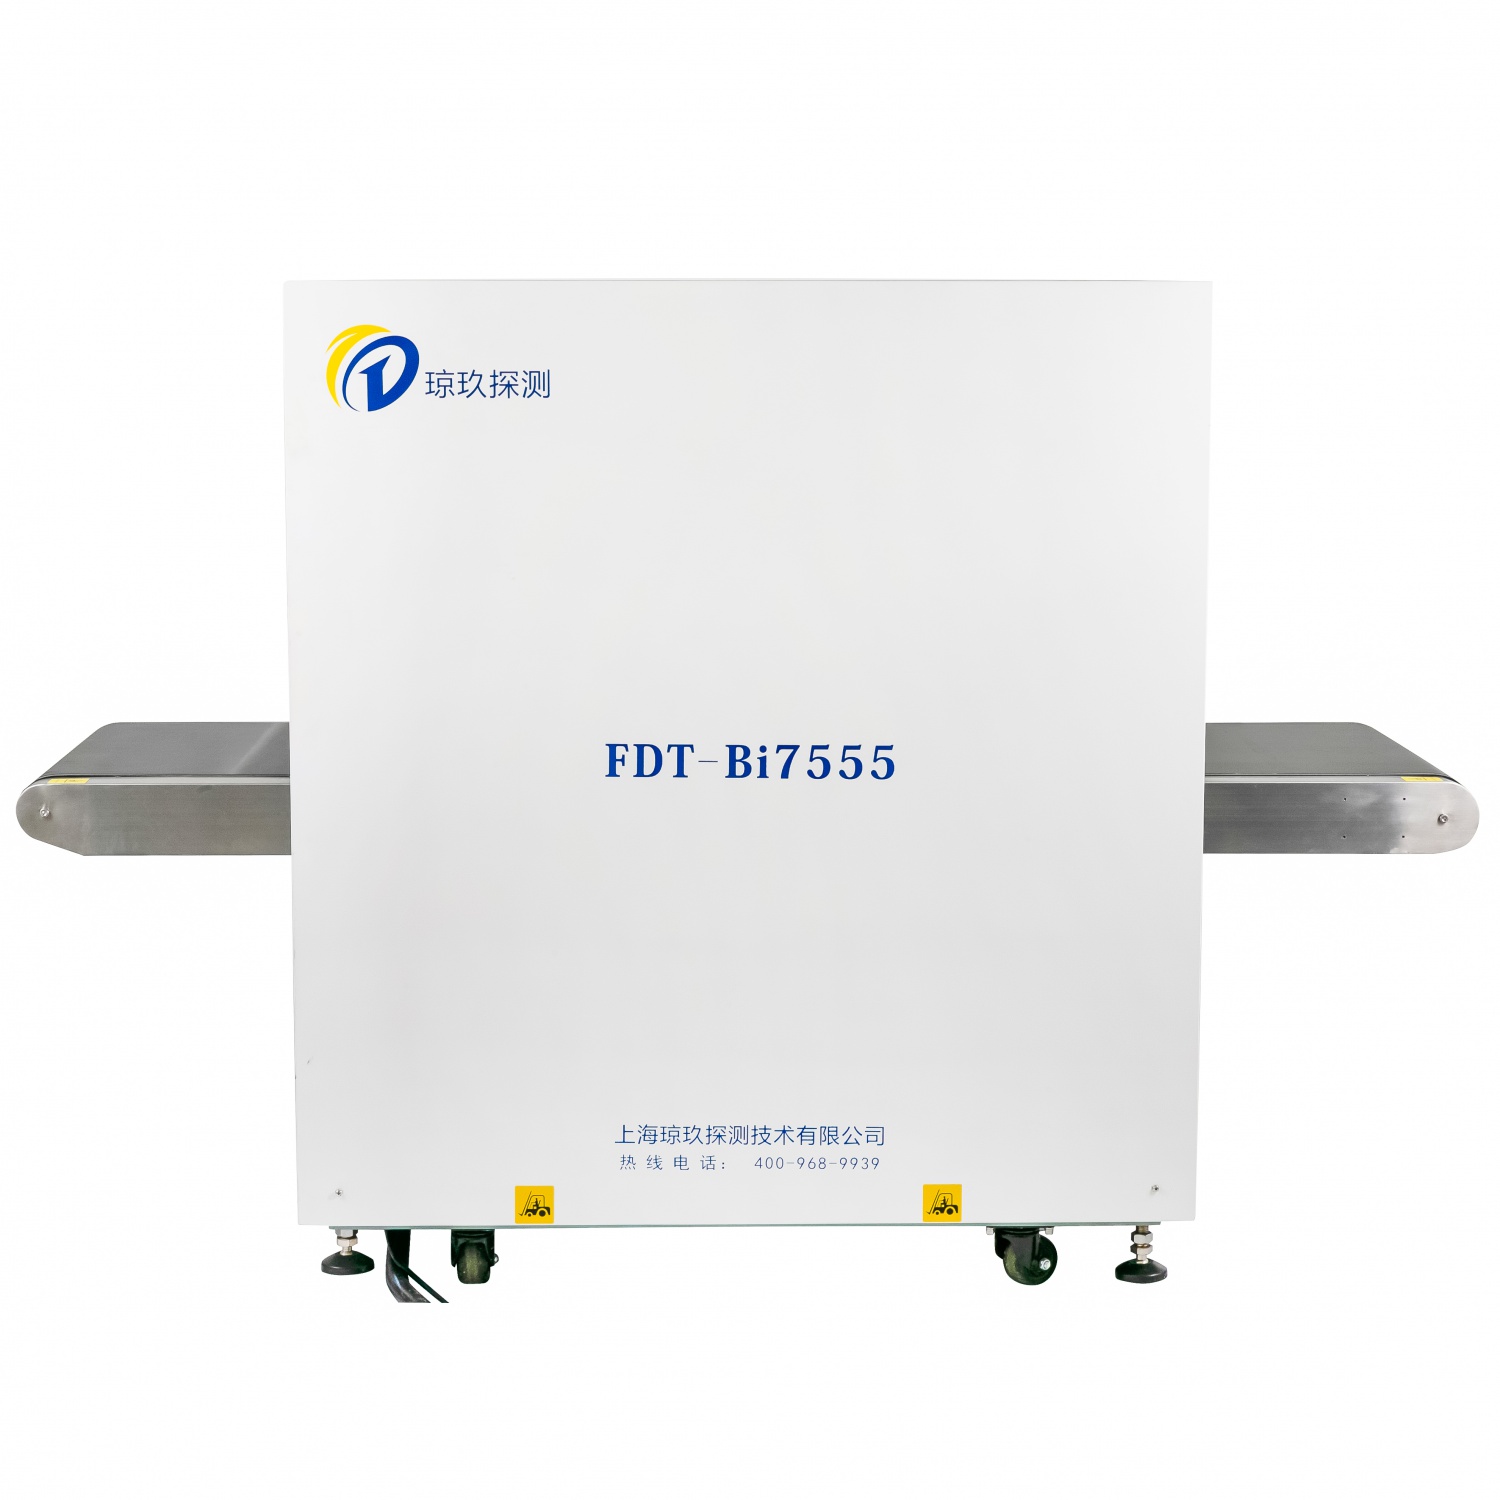 FDT-SE7555型 X射线检查设备安检机